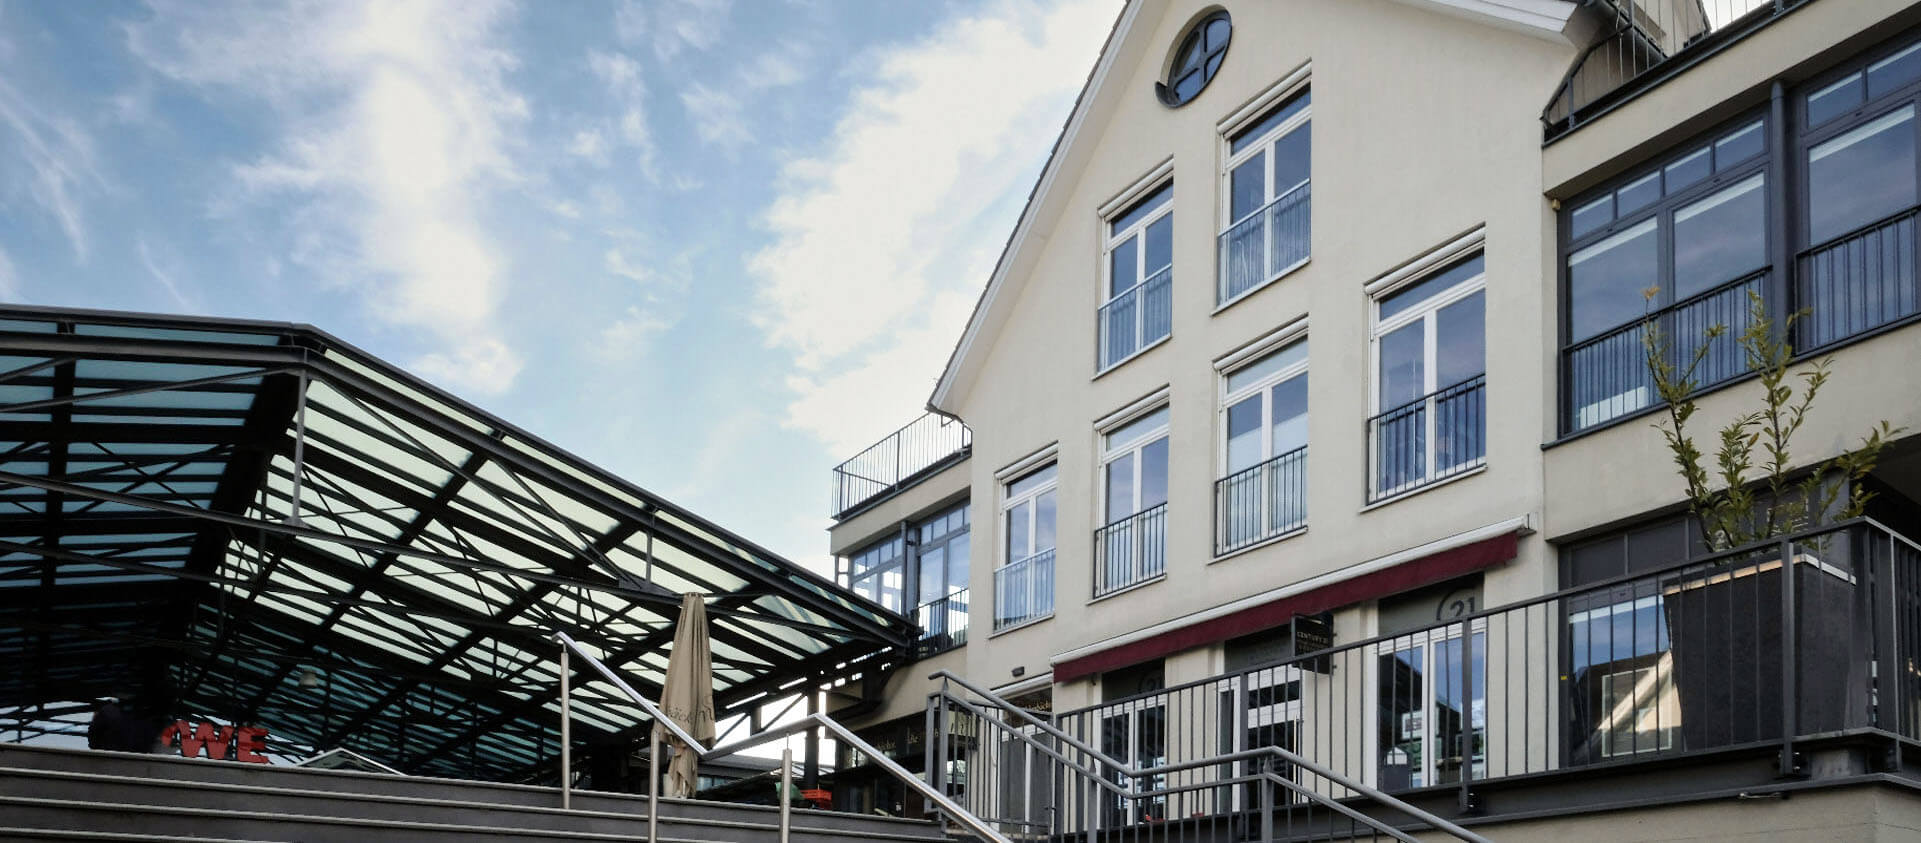 Eberhard Horn Prime Estates: Architektur des Einkaufzentrums und der Markthalle mit Stahl-Glasdach